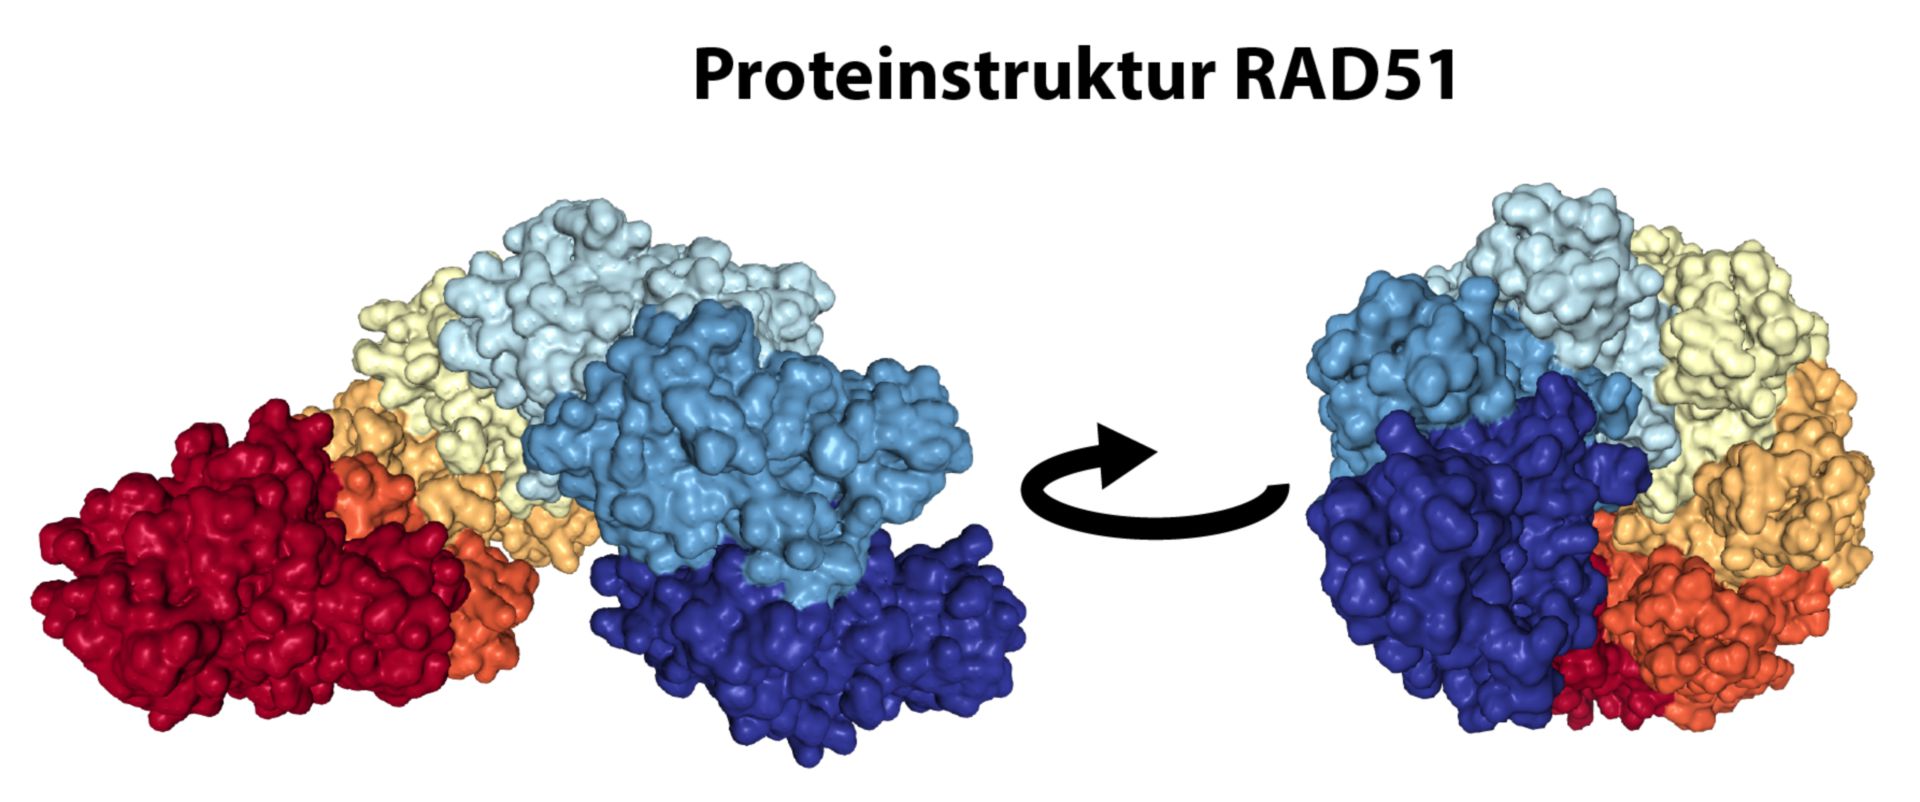 Proteinstruktur RAD51